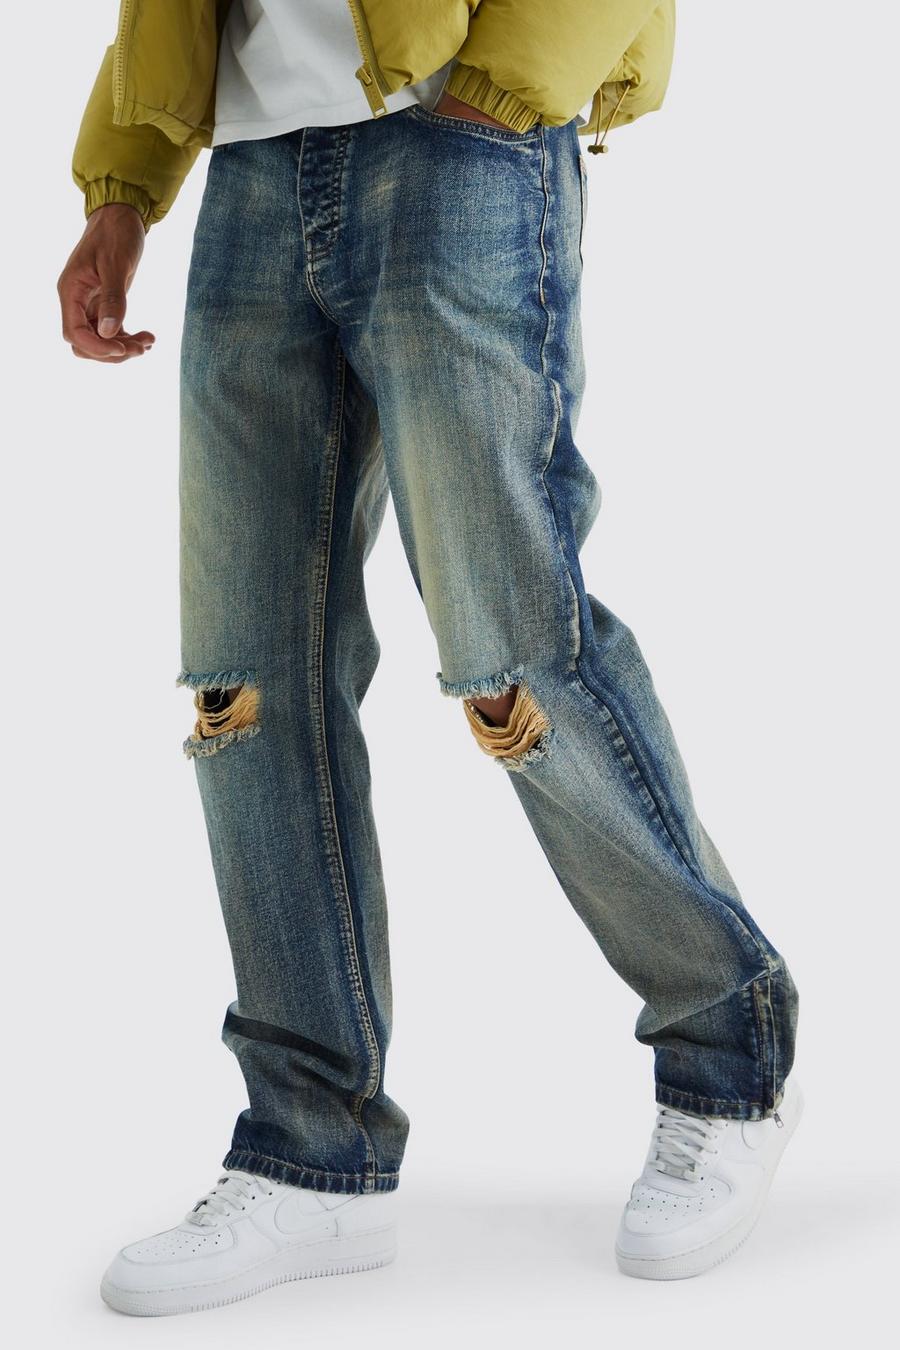 Tall lockere Jeans mit Reißverschluss-Saum, Antique wash